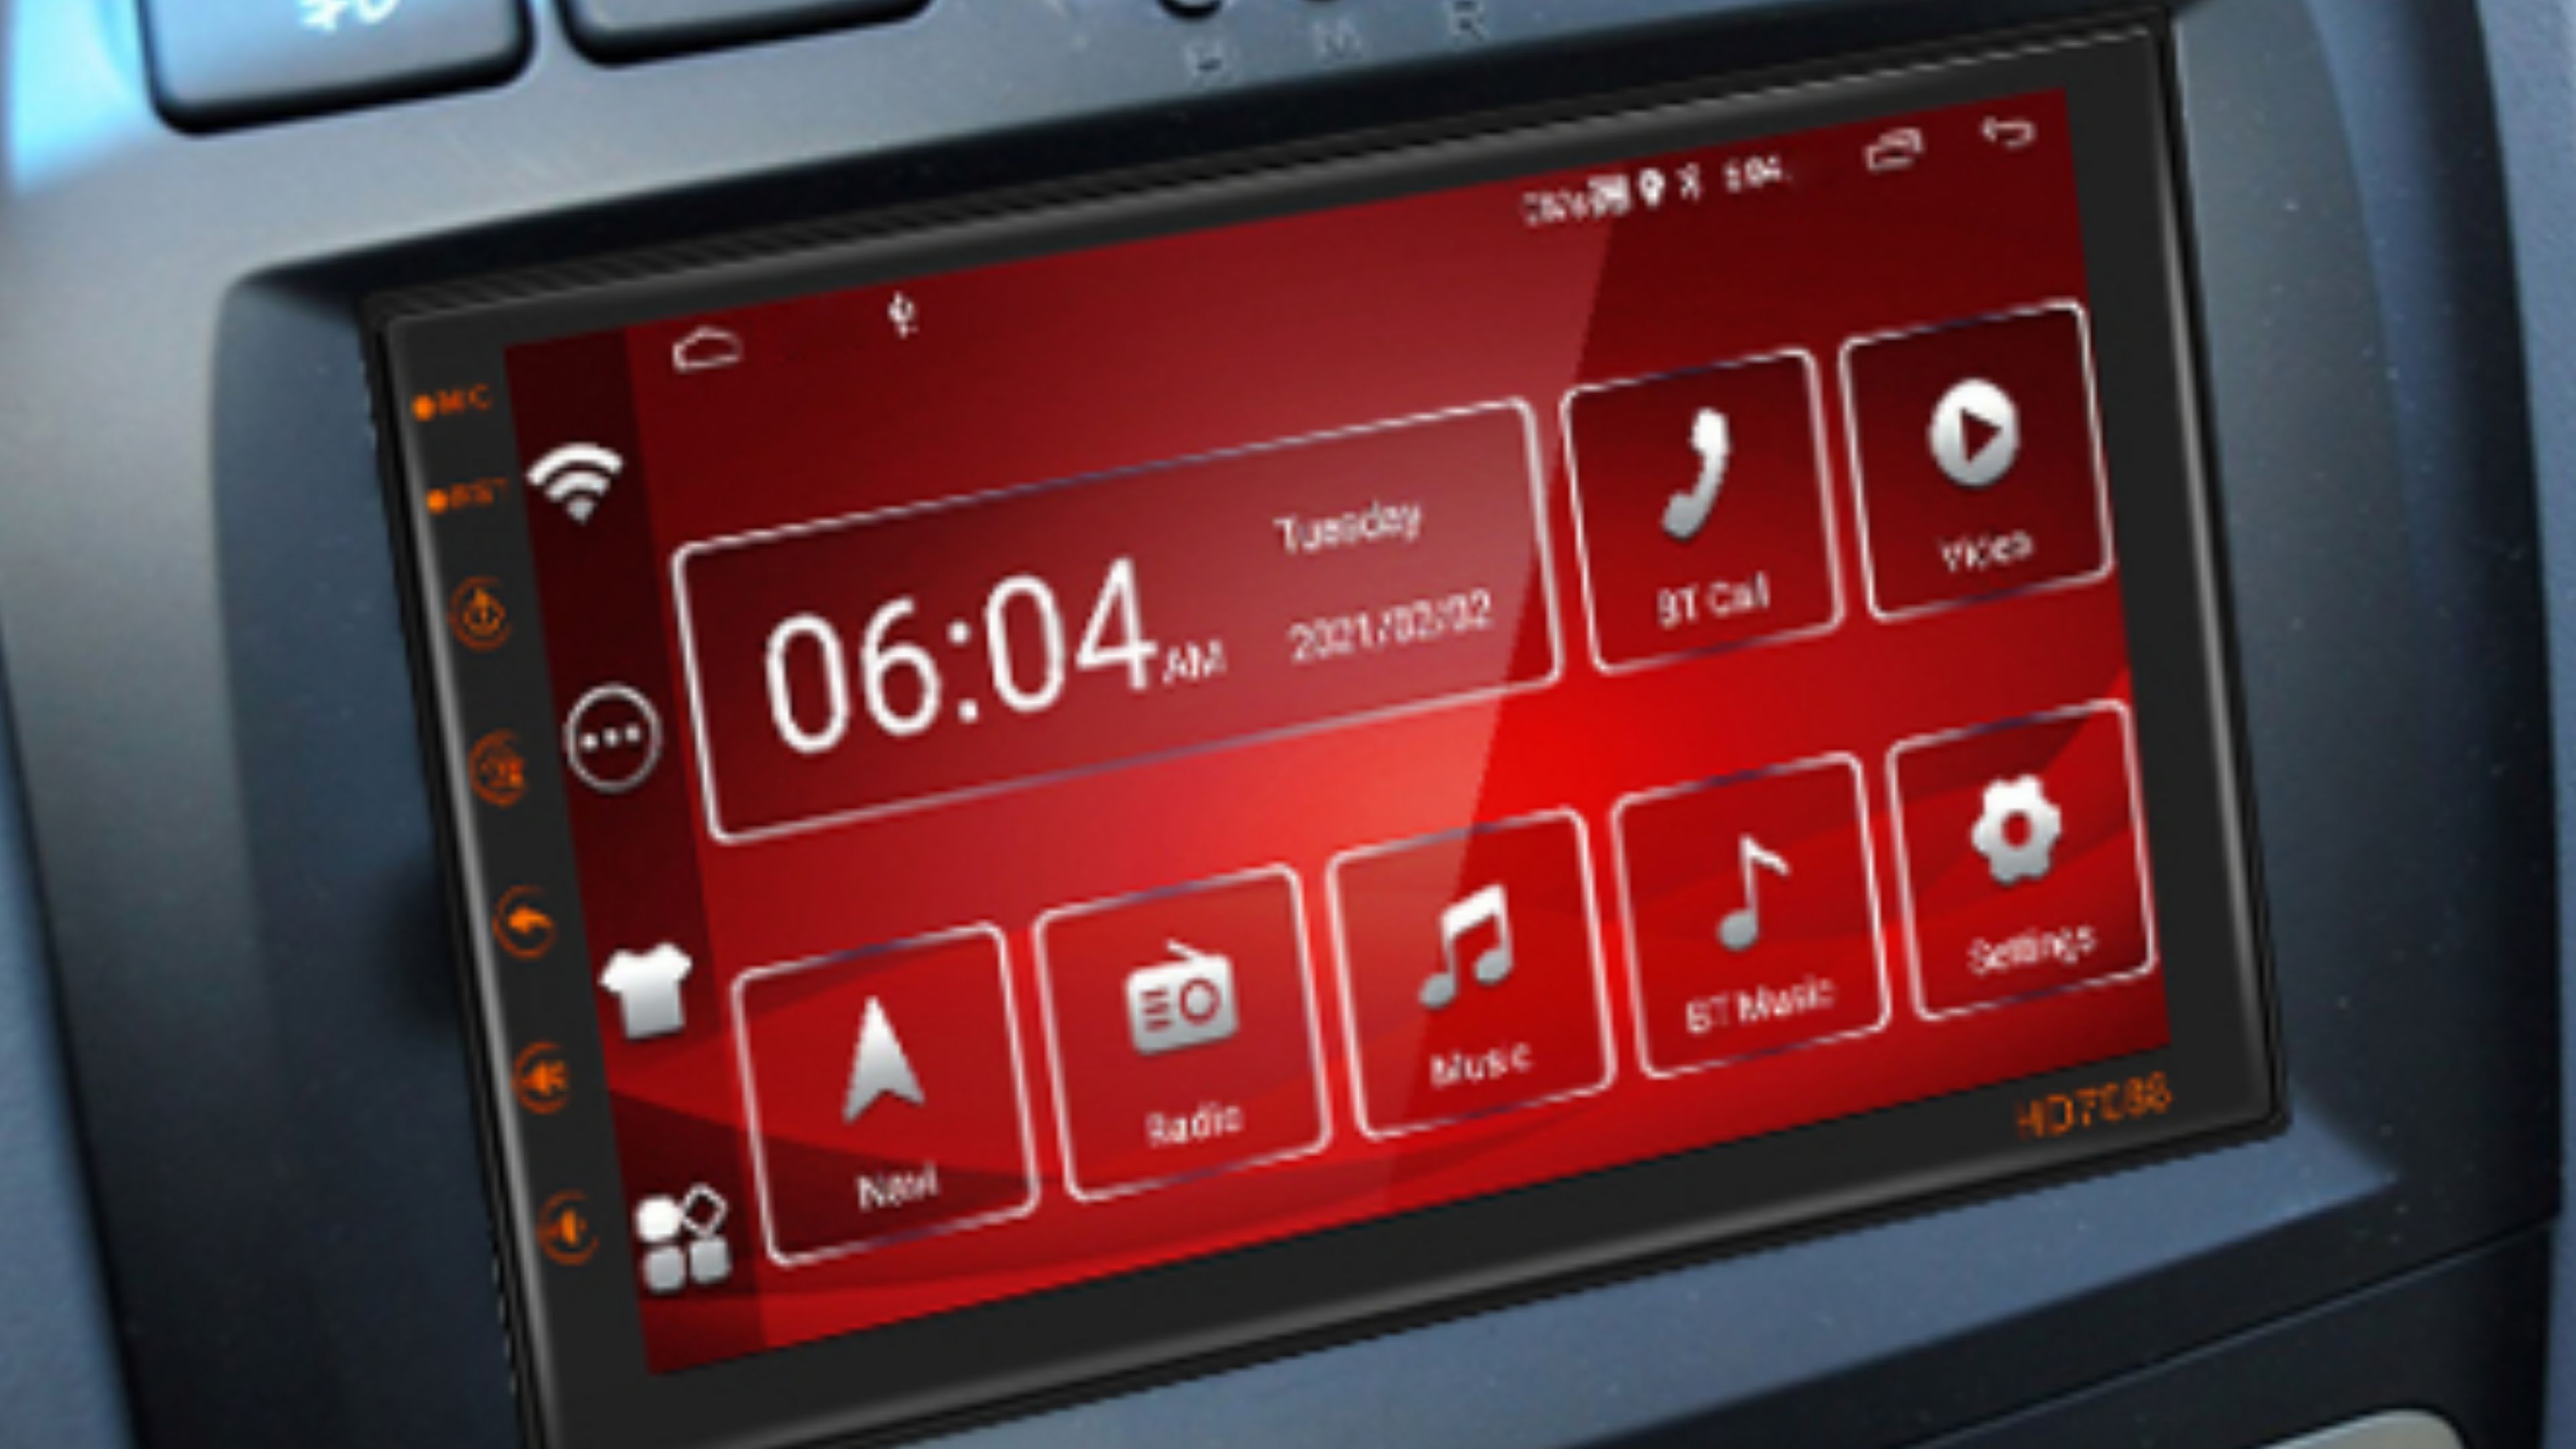 Qué pantalla con Android Auto para tu coche comprar: guía de compra con  mejores recomendaciones y consejos